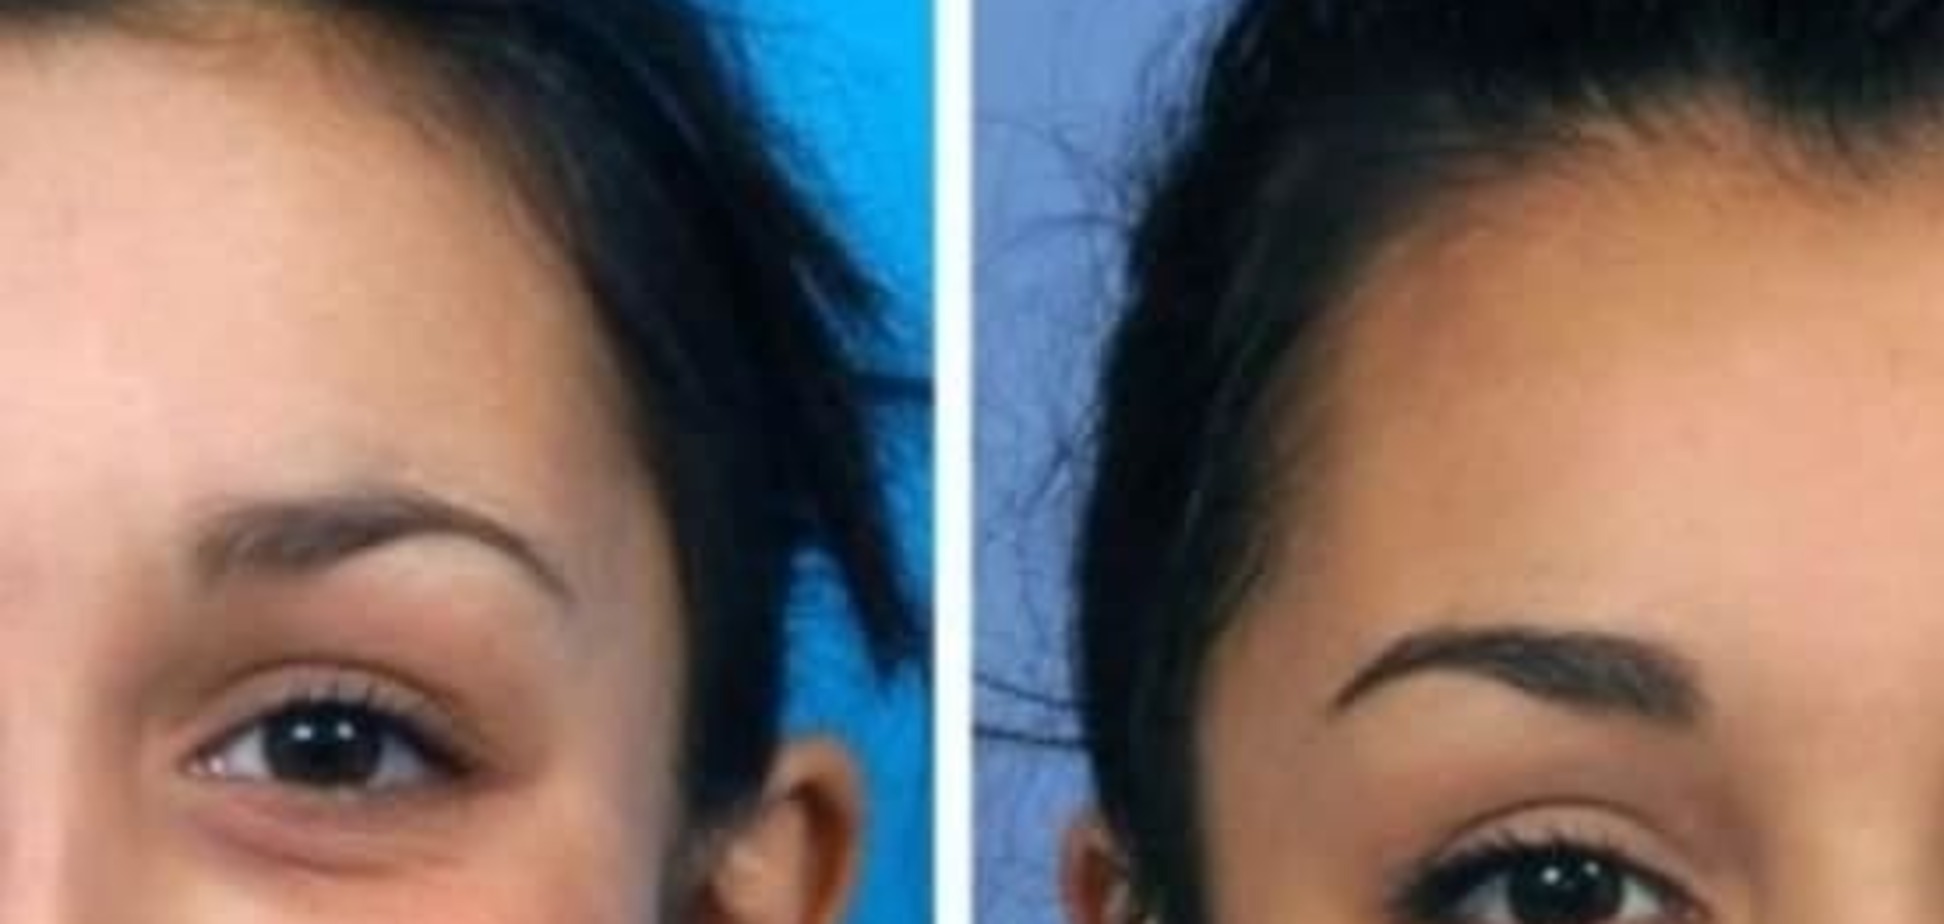 Чудеса пластической хирургии: медики помогли девушке с деформированной челюстью стать красавицей